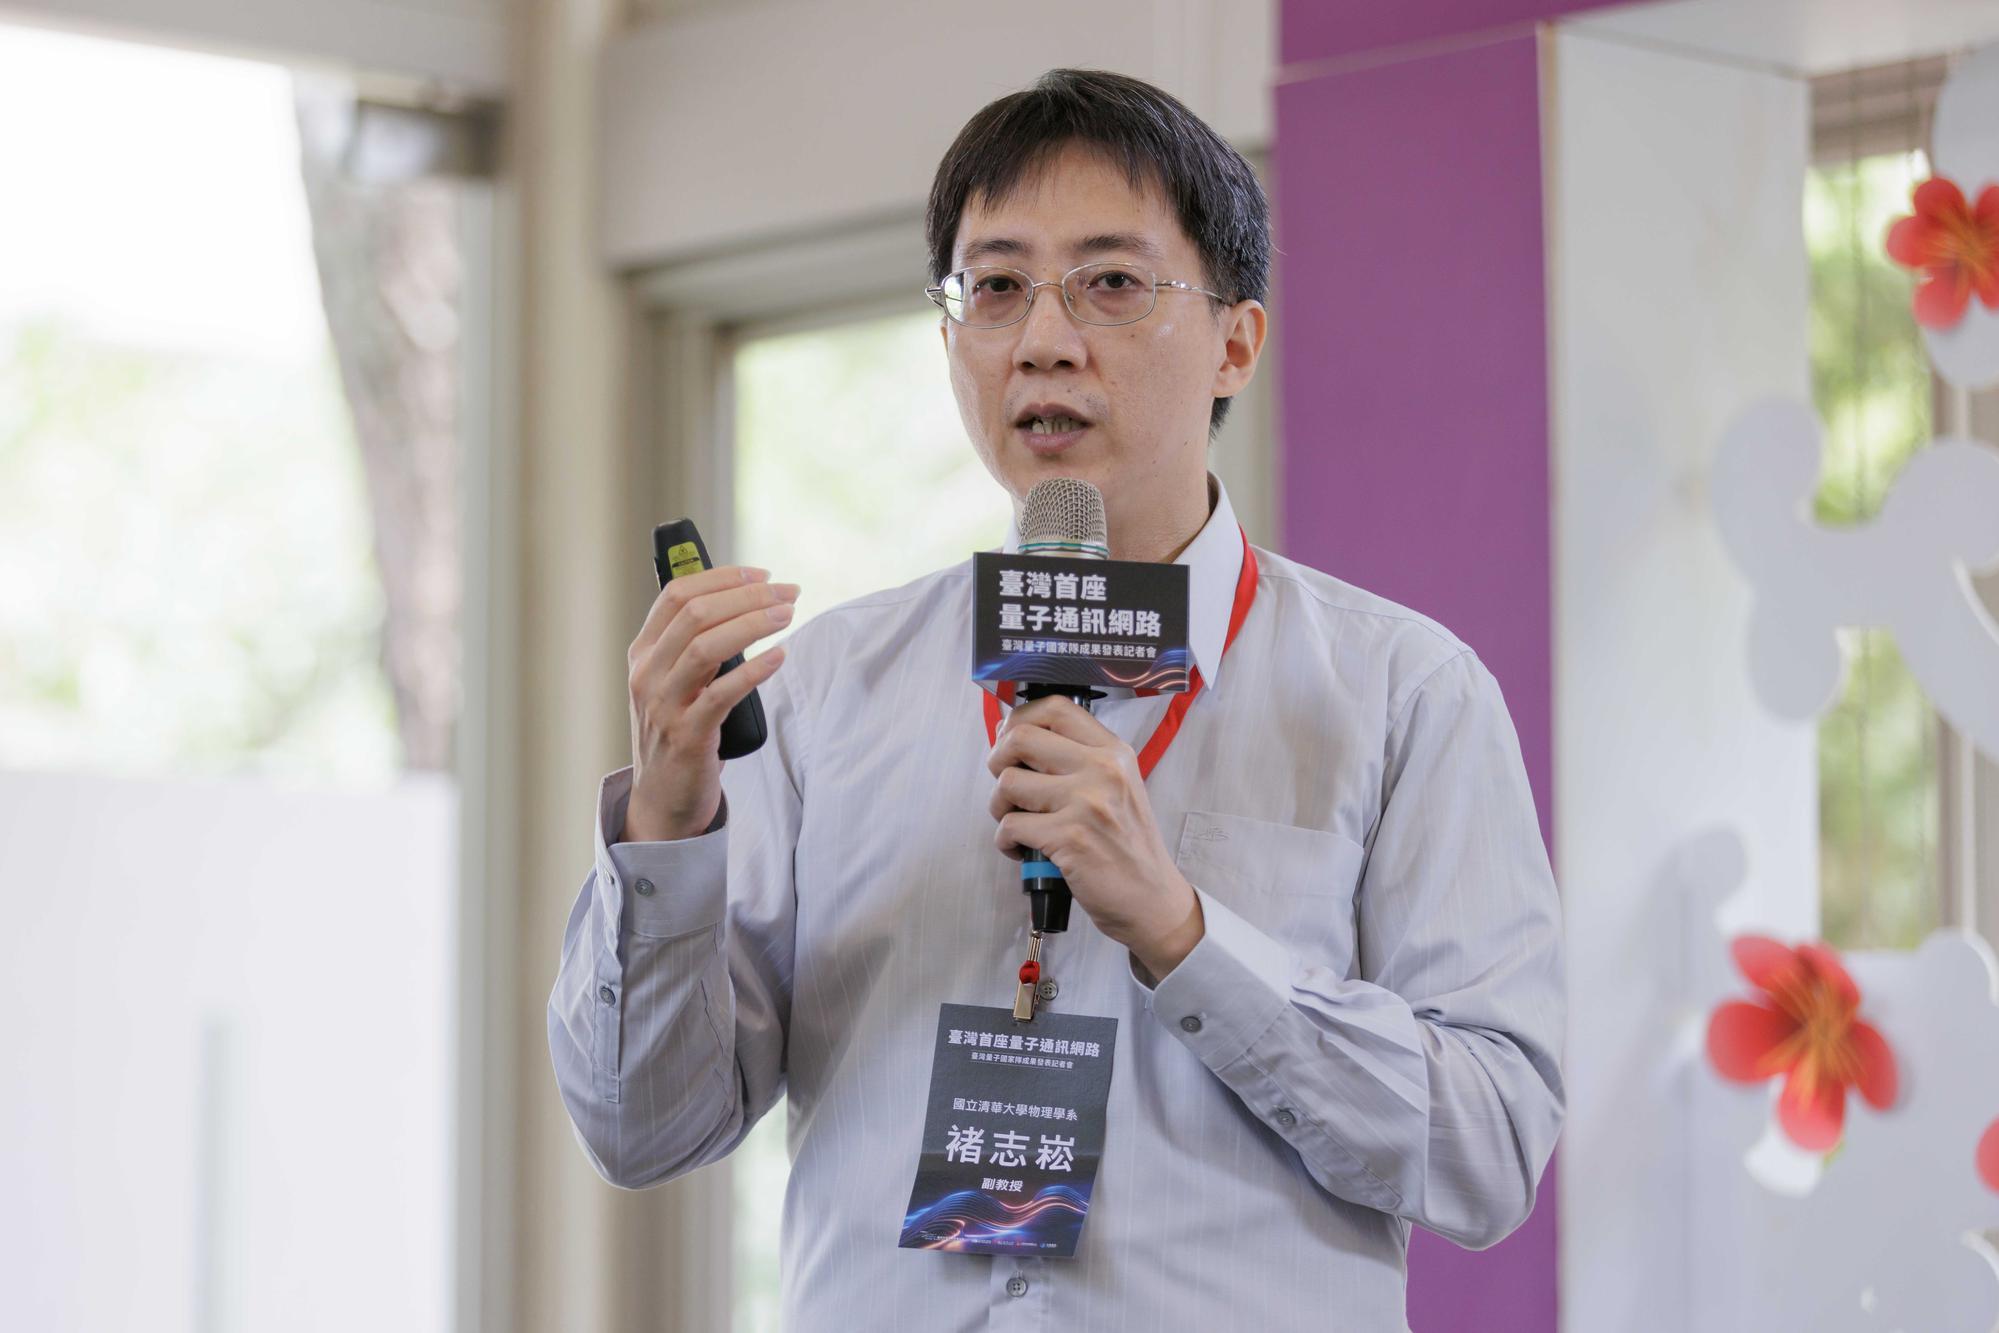 本校物理系褚志崧副教授成功研發台灣第一個量子加密通訊網路。
A research team led by A.P. Chih-sung Chuu (褚志崧) has developed Taiwan's first quantum secure communication network.